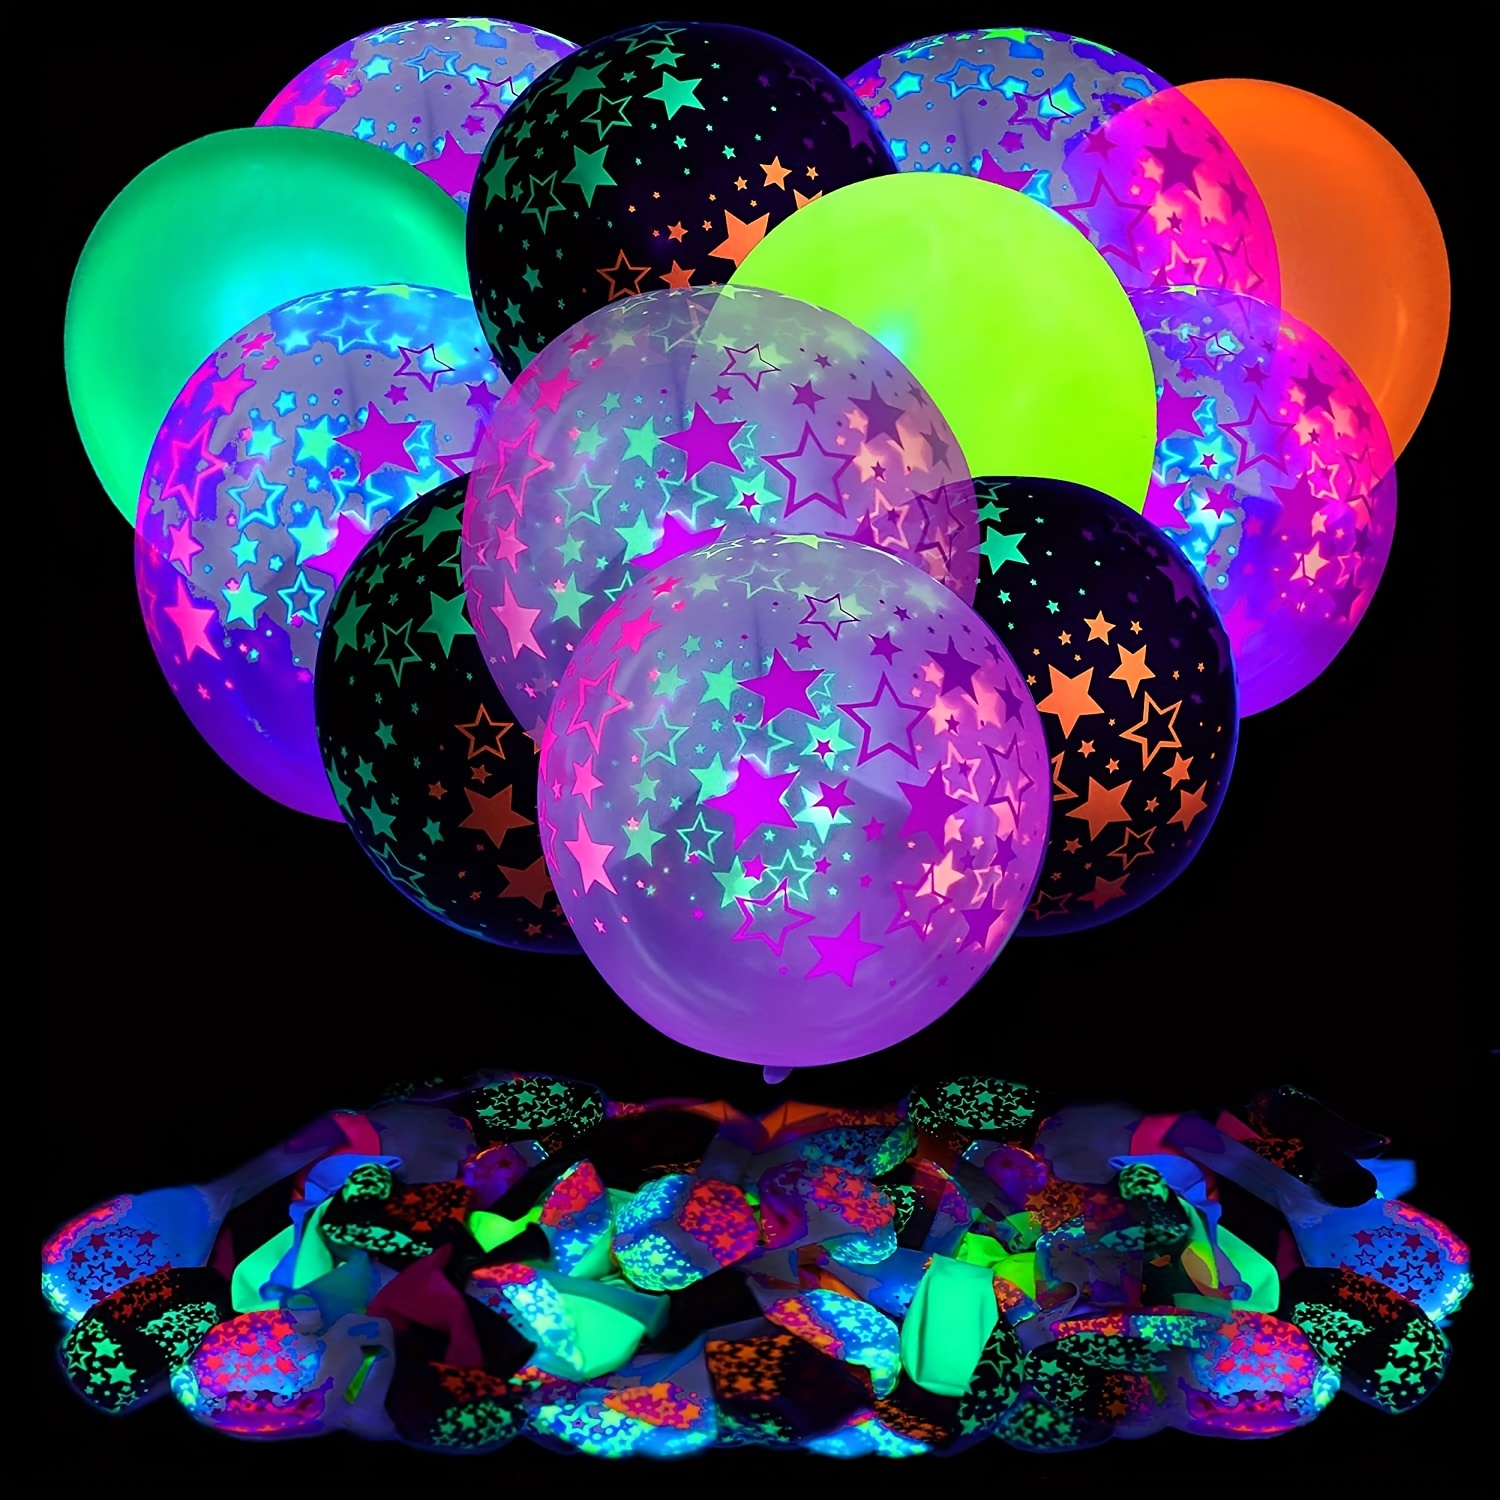 100 ballons colorés ballons en latex arc-en-ciel de 12 pouces, décoration  de fête de couleurs mélangées ballons lumineux, fournitures de fête d' anniversaire ou décoration d'arche